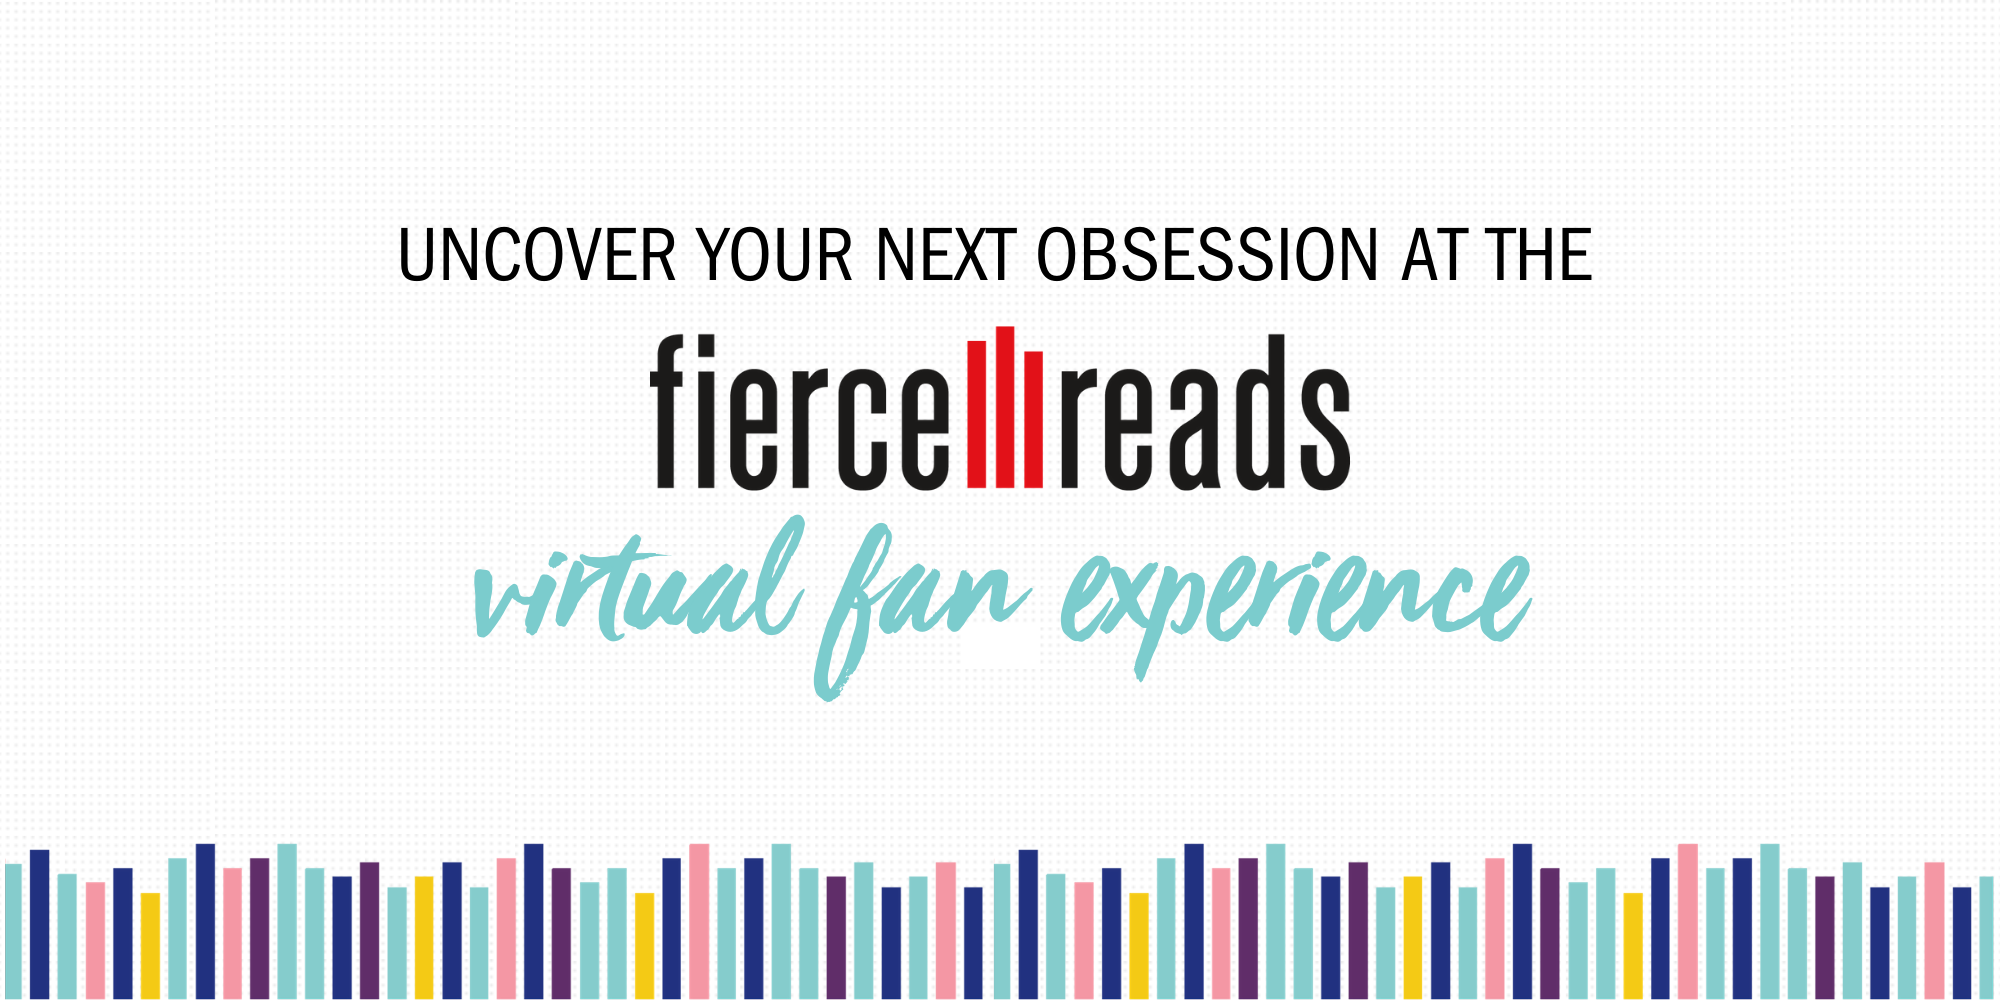 Fierce Reads Virtual Fan Experience